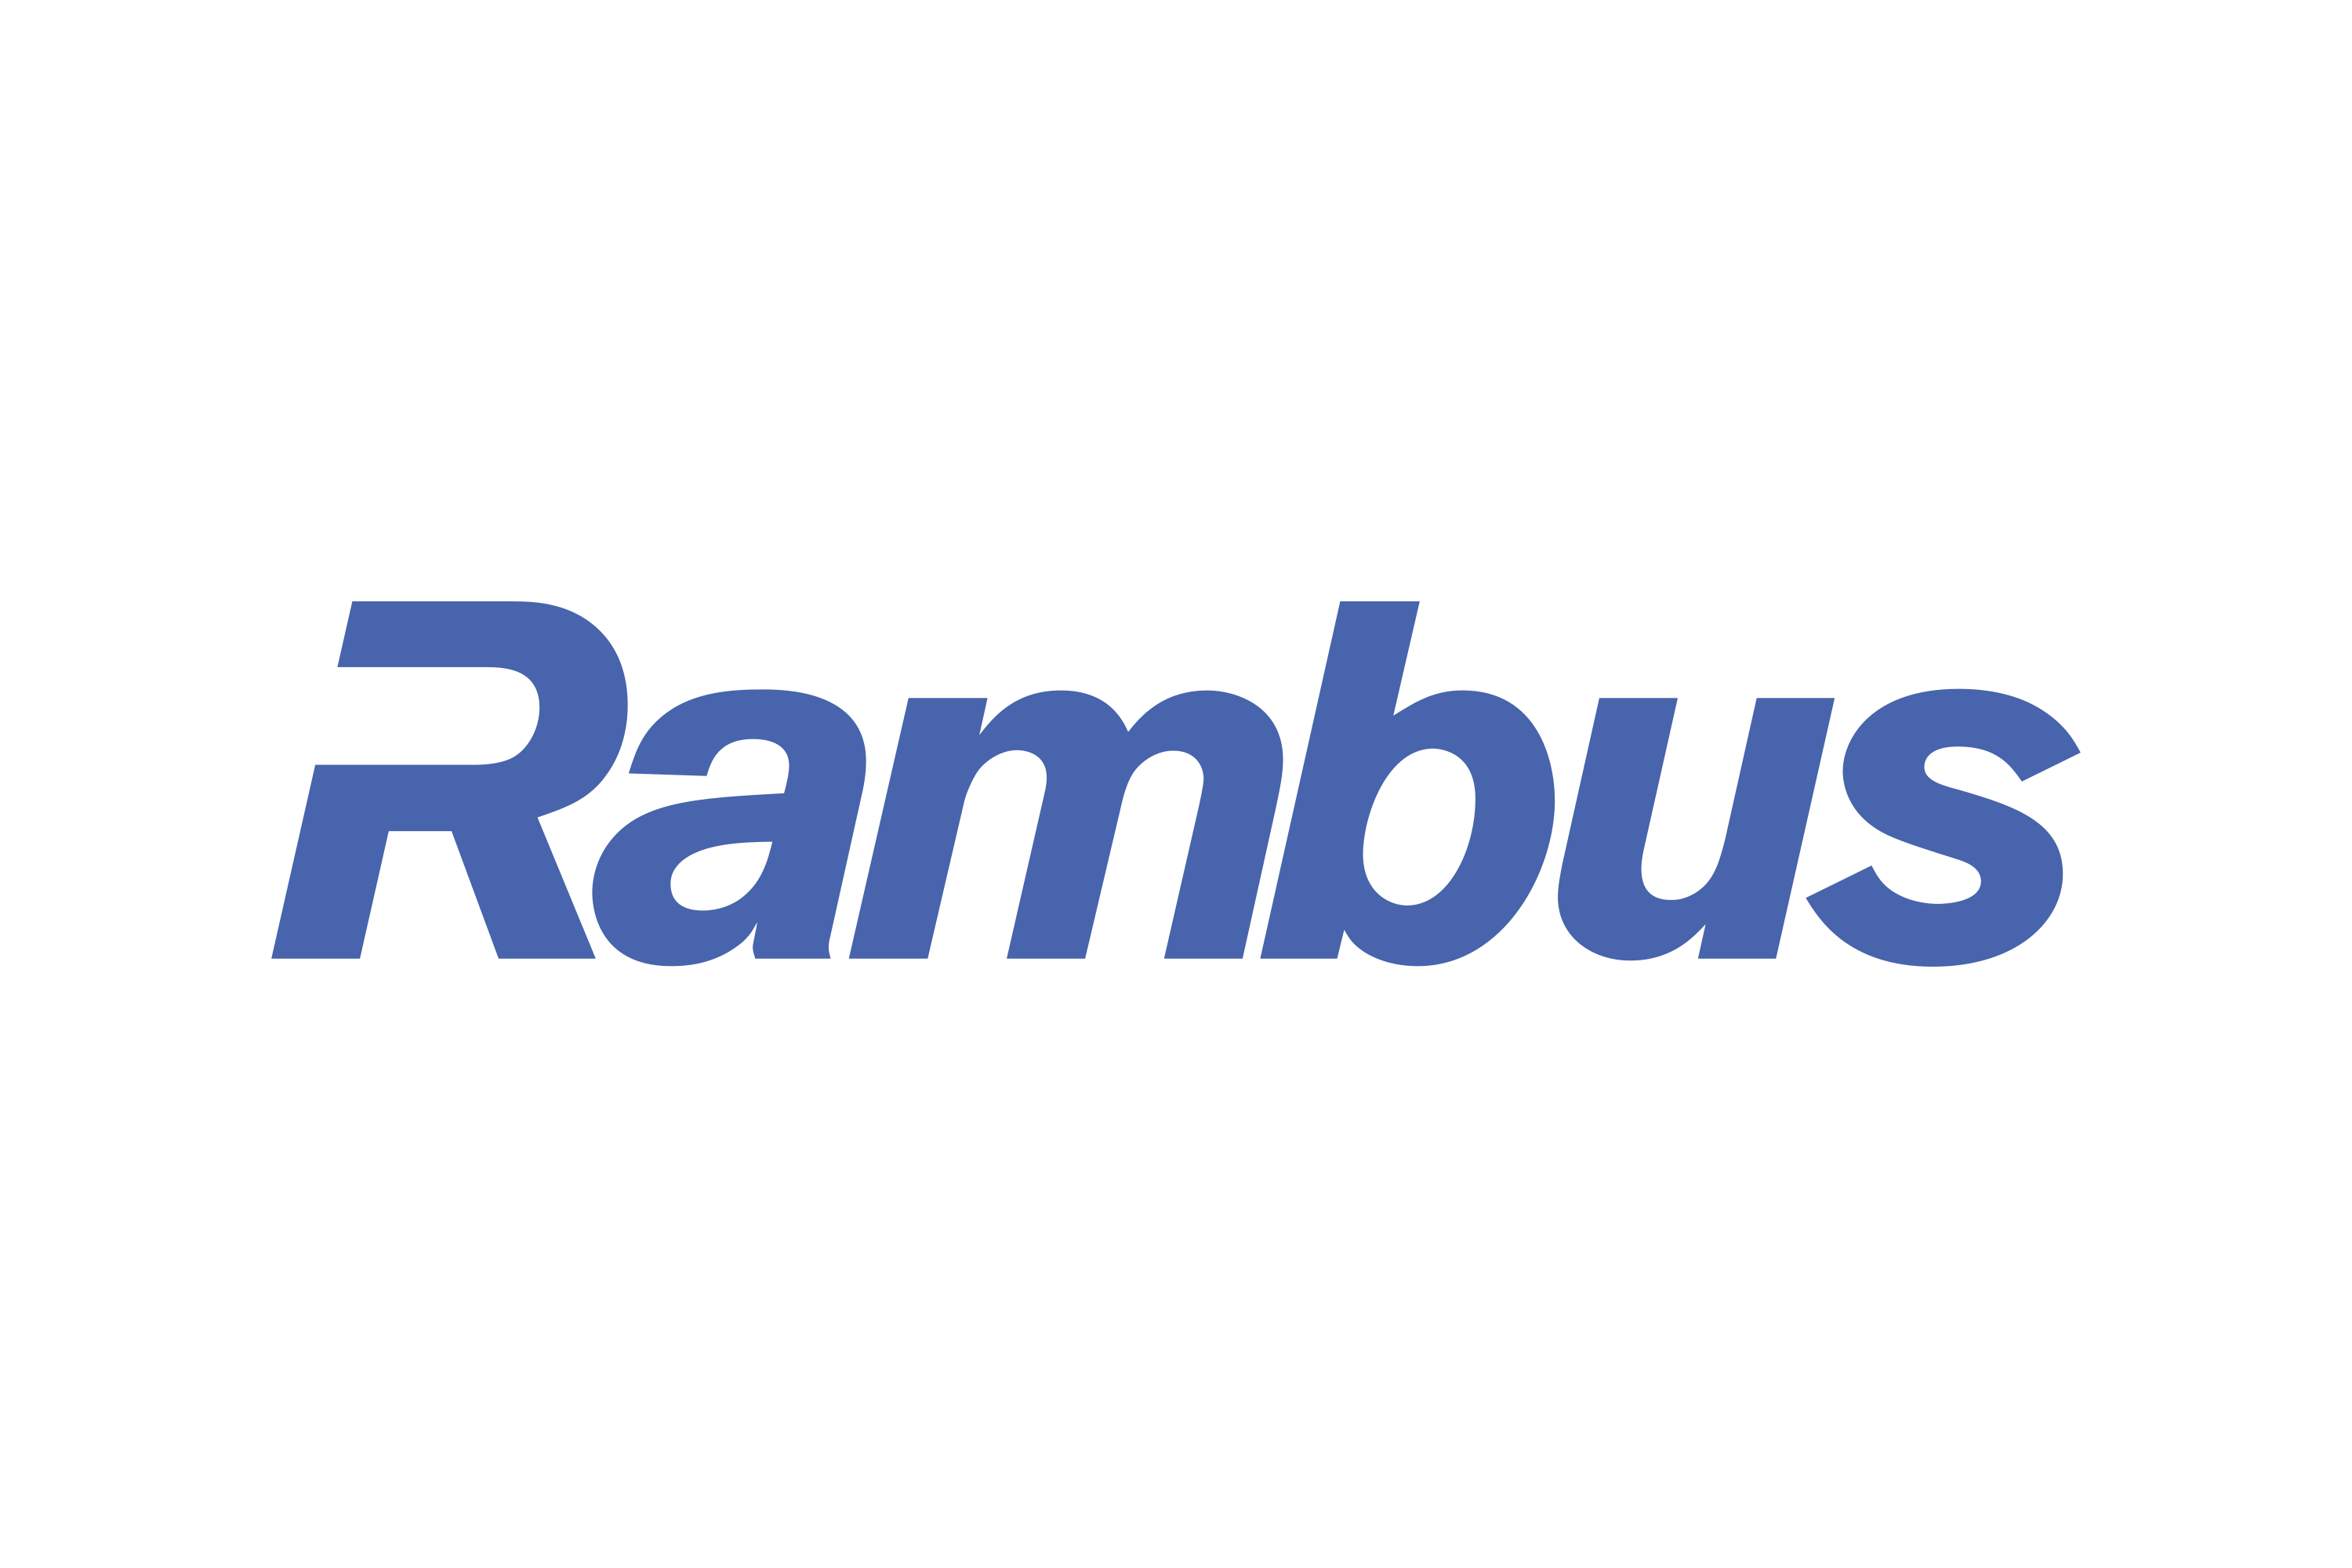 Rambus Logo